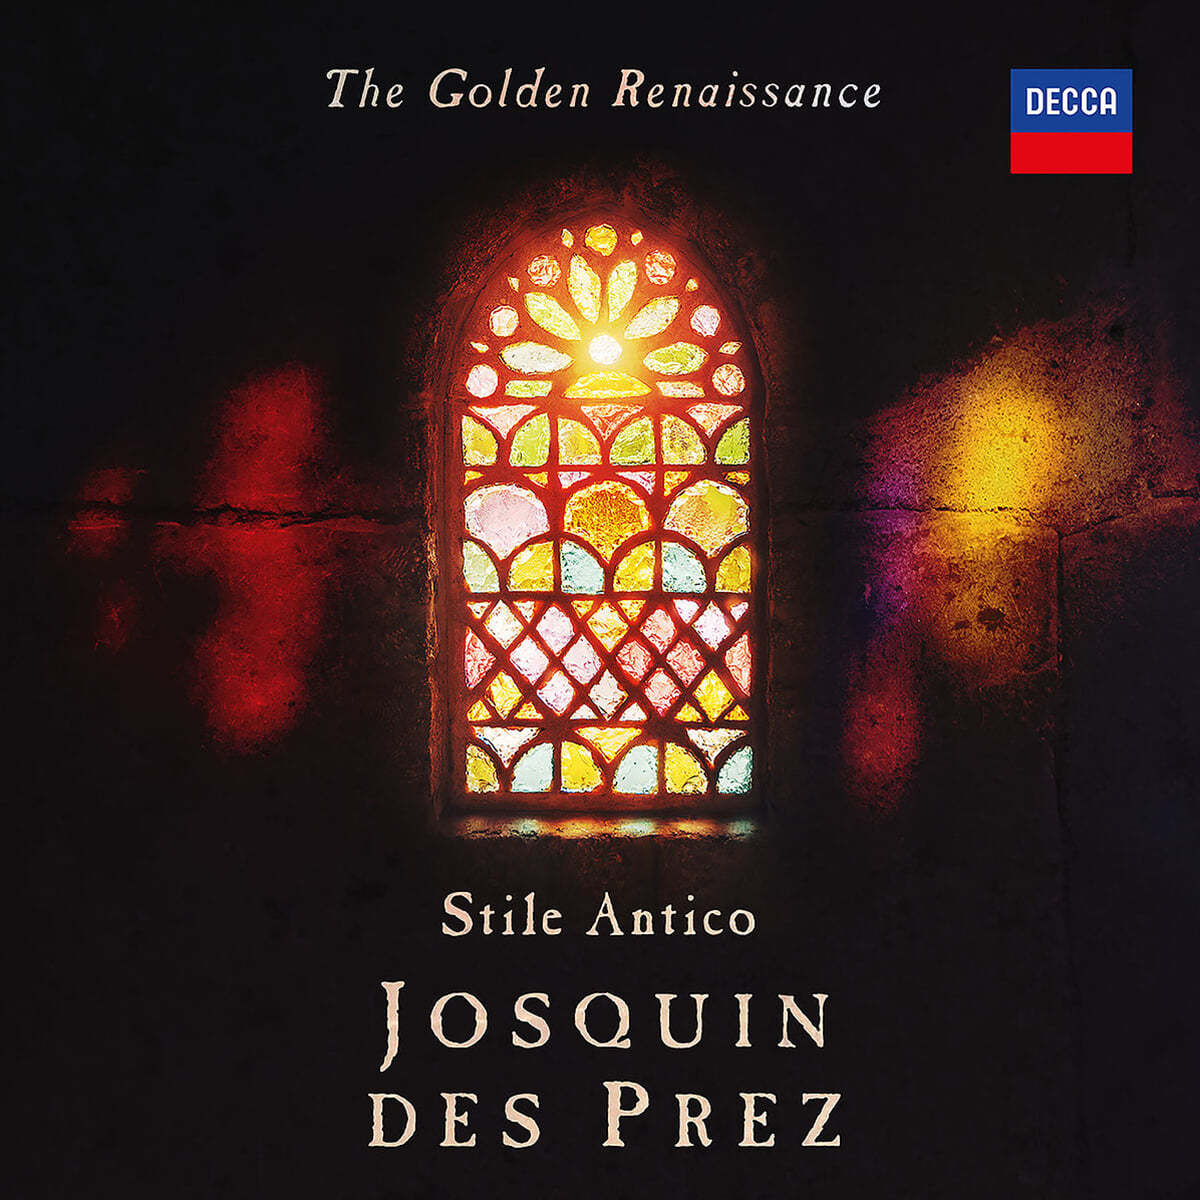 Stile Antico 고음악 보컬 앙상블이 노래하는 조스캥 데 프레 - 스틸레 안티코 (Josquin Des Prez - The Golden Renaissance) 